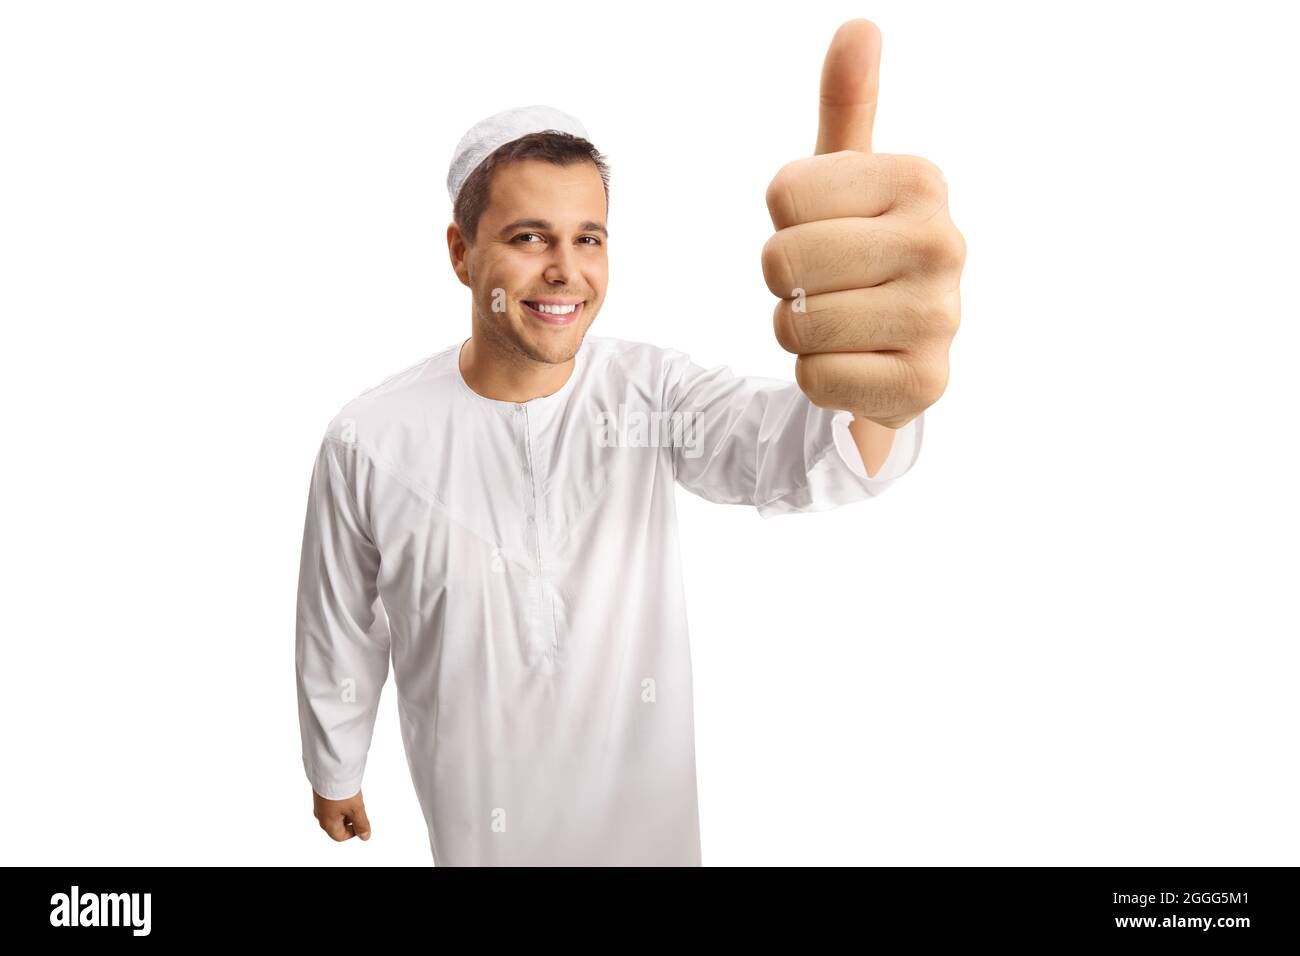 Giovane uomo allegro in abiti etnici bianchi che mostrano i pollici di fronte alla macchina fotografica isolata su sfondo bianco Foto Stock